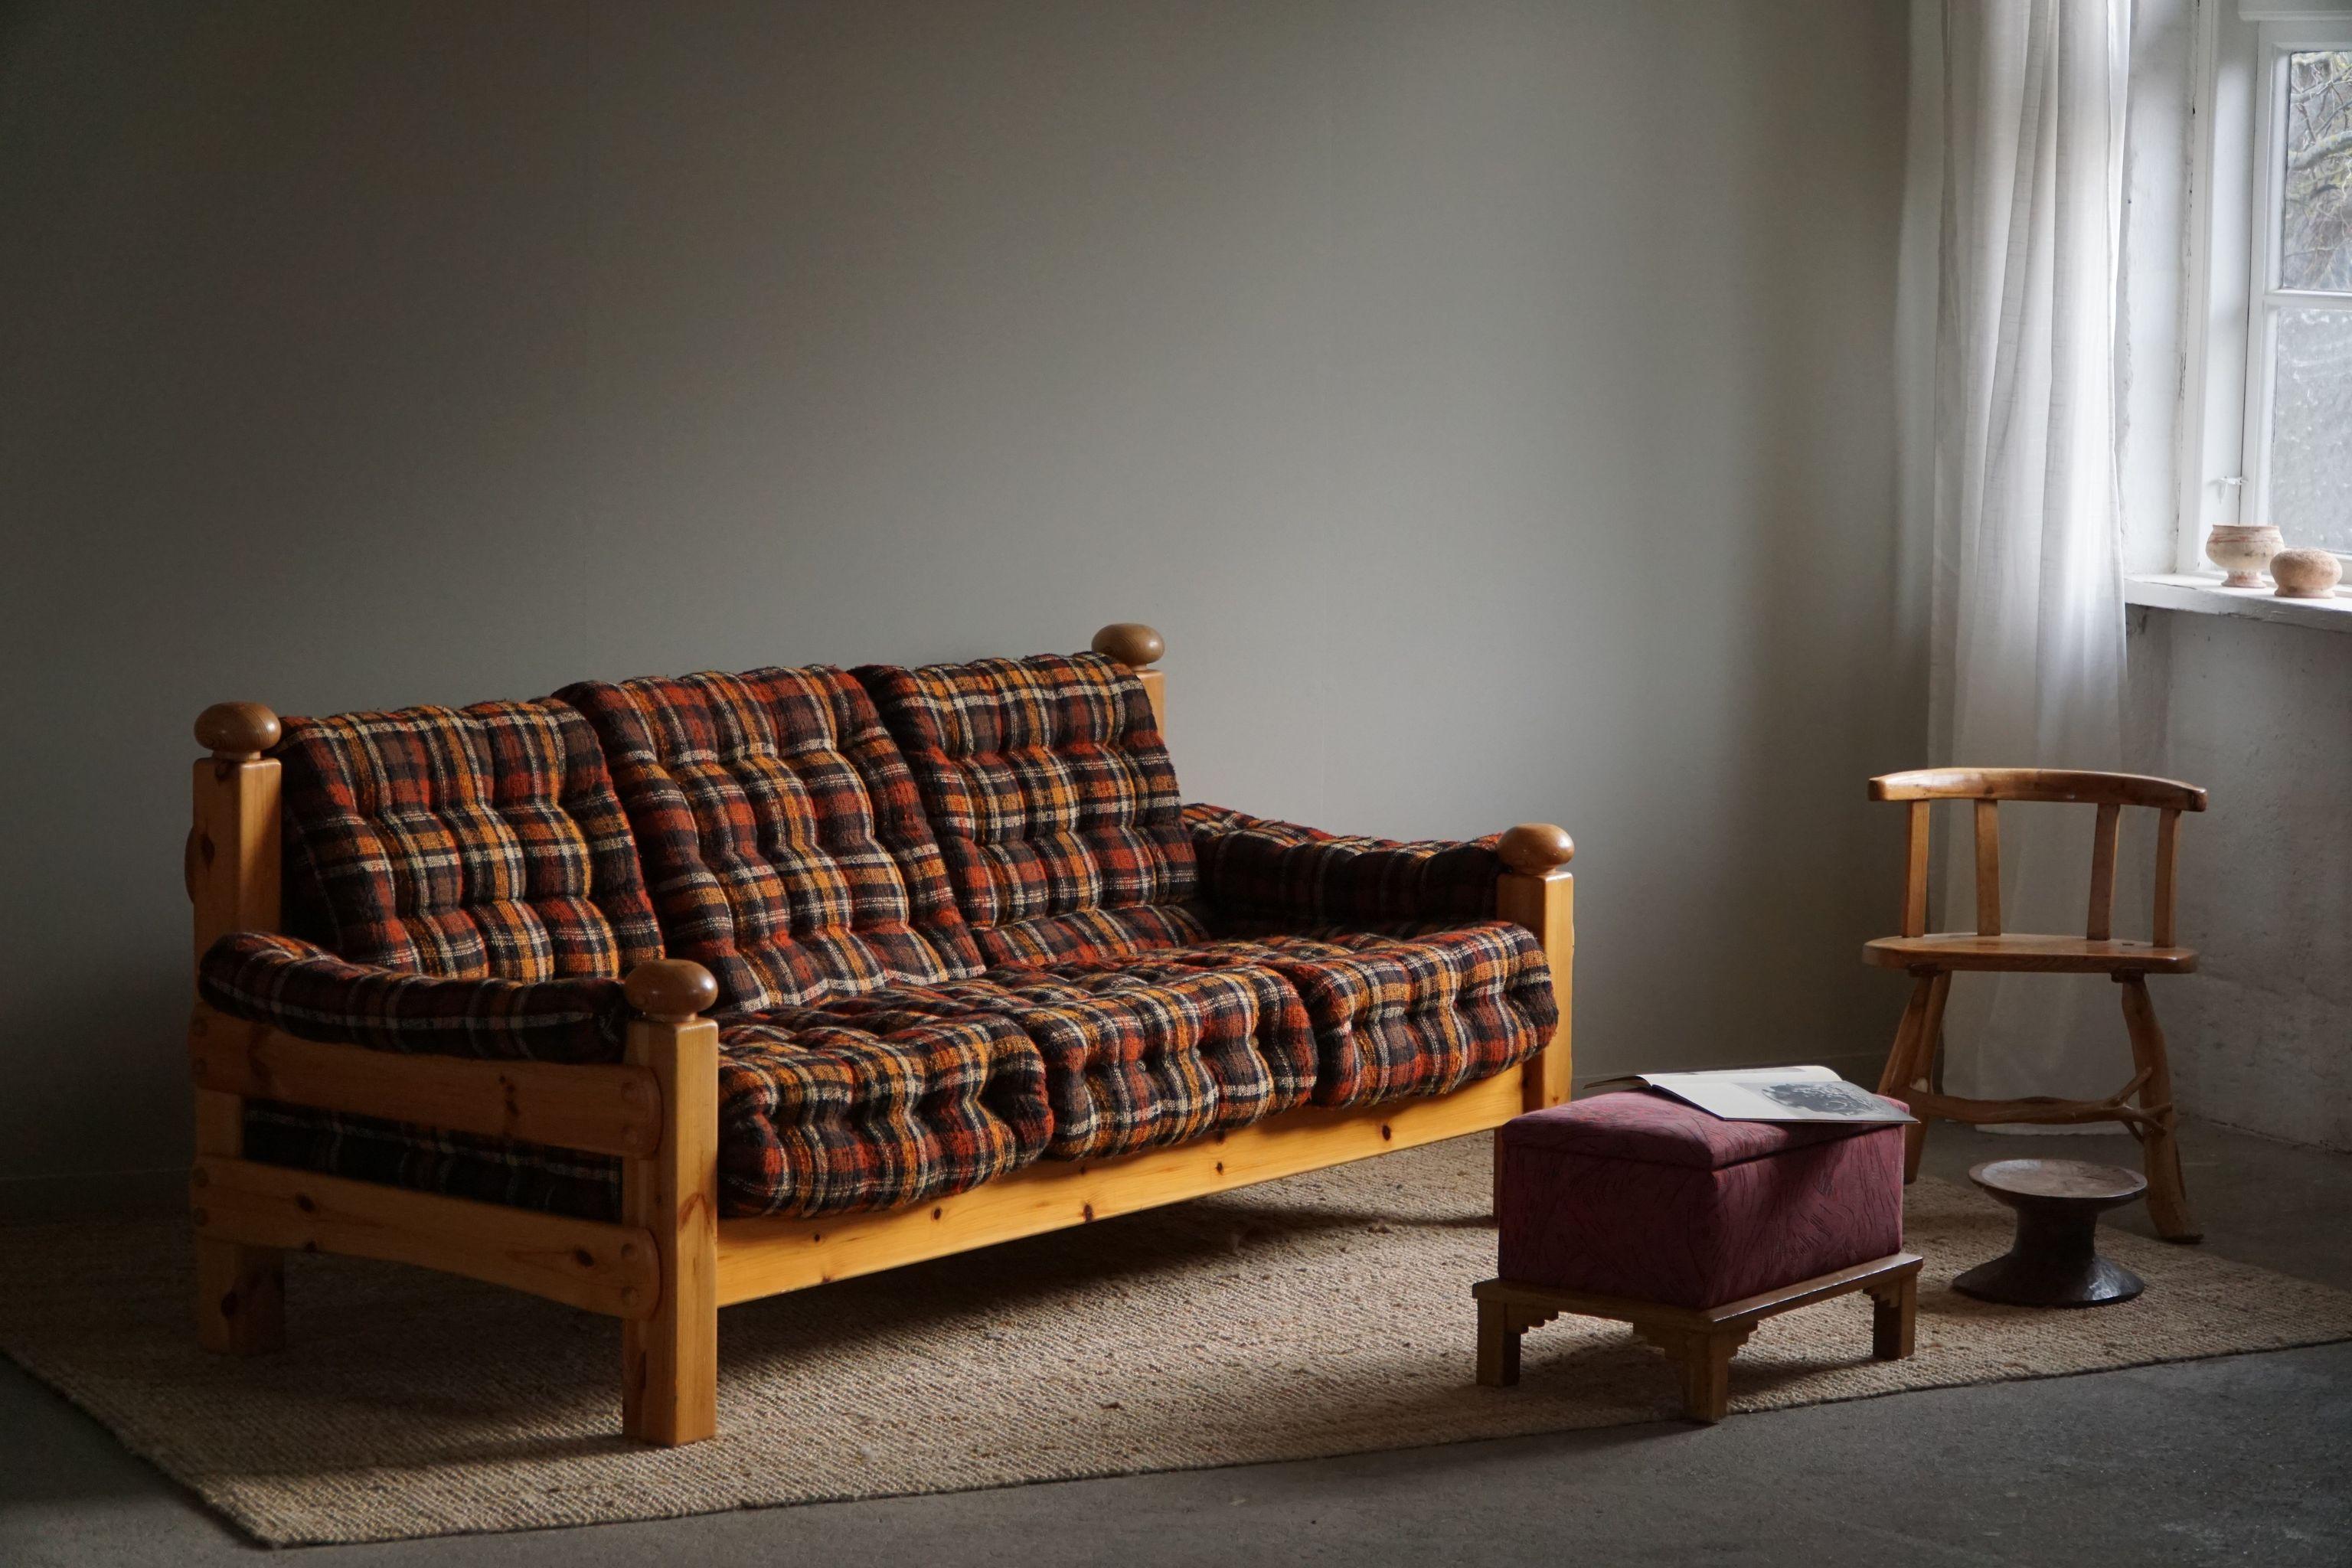 Ein bequemes Dreisitzer-Sofa, gepolstert mit einem Vintage-Stoff. 
Wird dem schwedischen Designer Sven Larsson zugeschrieben. Hergestellt in den 1970er Jahren.
Dieses solide Sofa passt zu vielen Einrichtungsstilen. Ein modernes, klassisches, Art